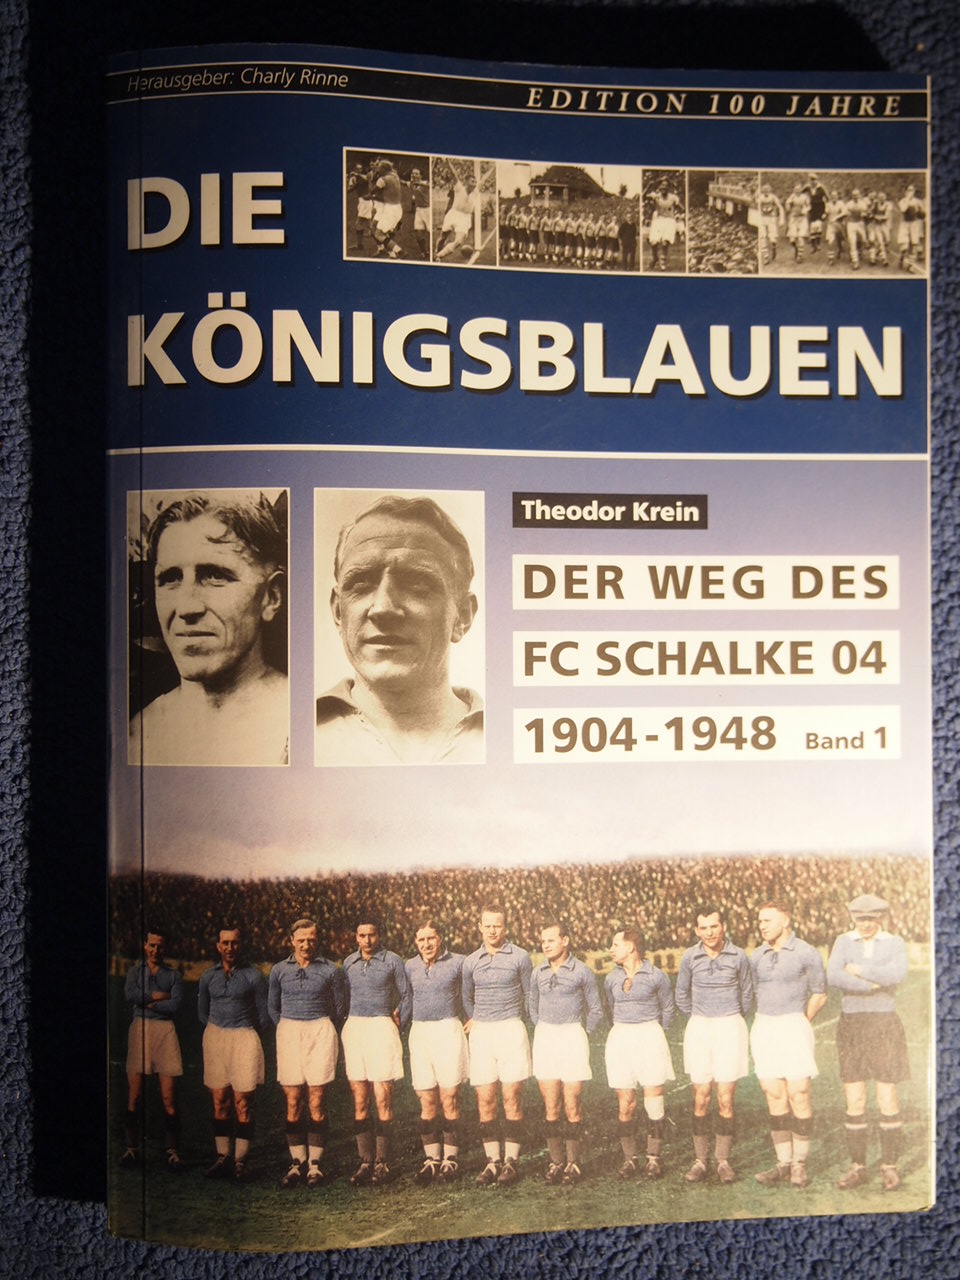 Die Königsblauen - Der Weg des FC Schalke 04 1904-1948 - Band 1. - Theodor Krein